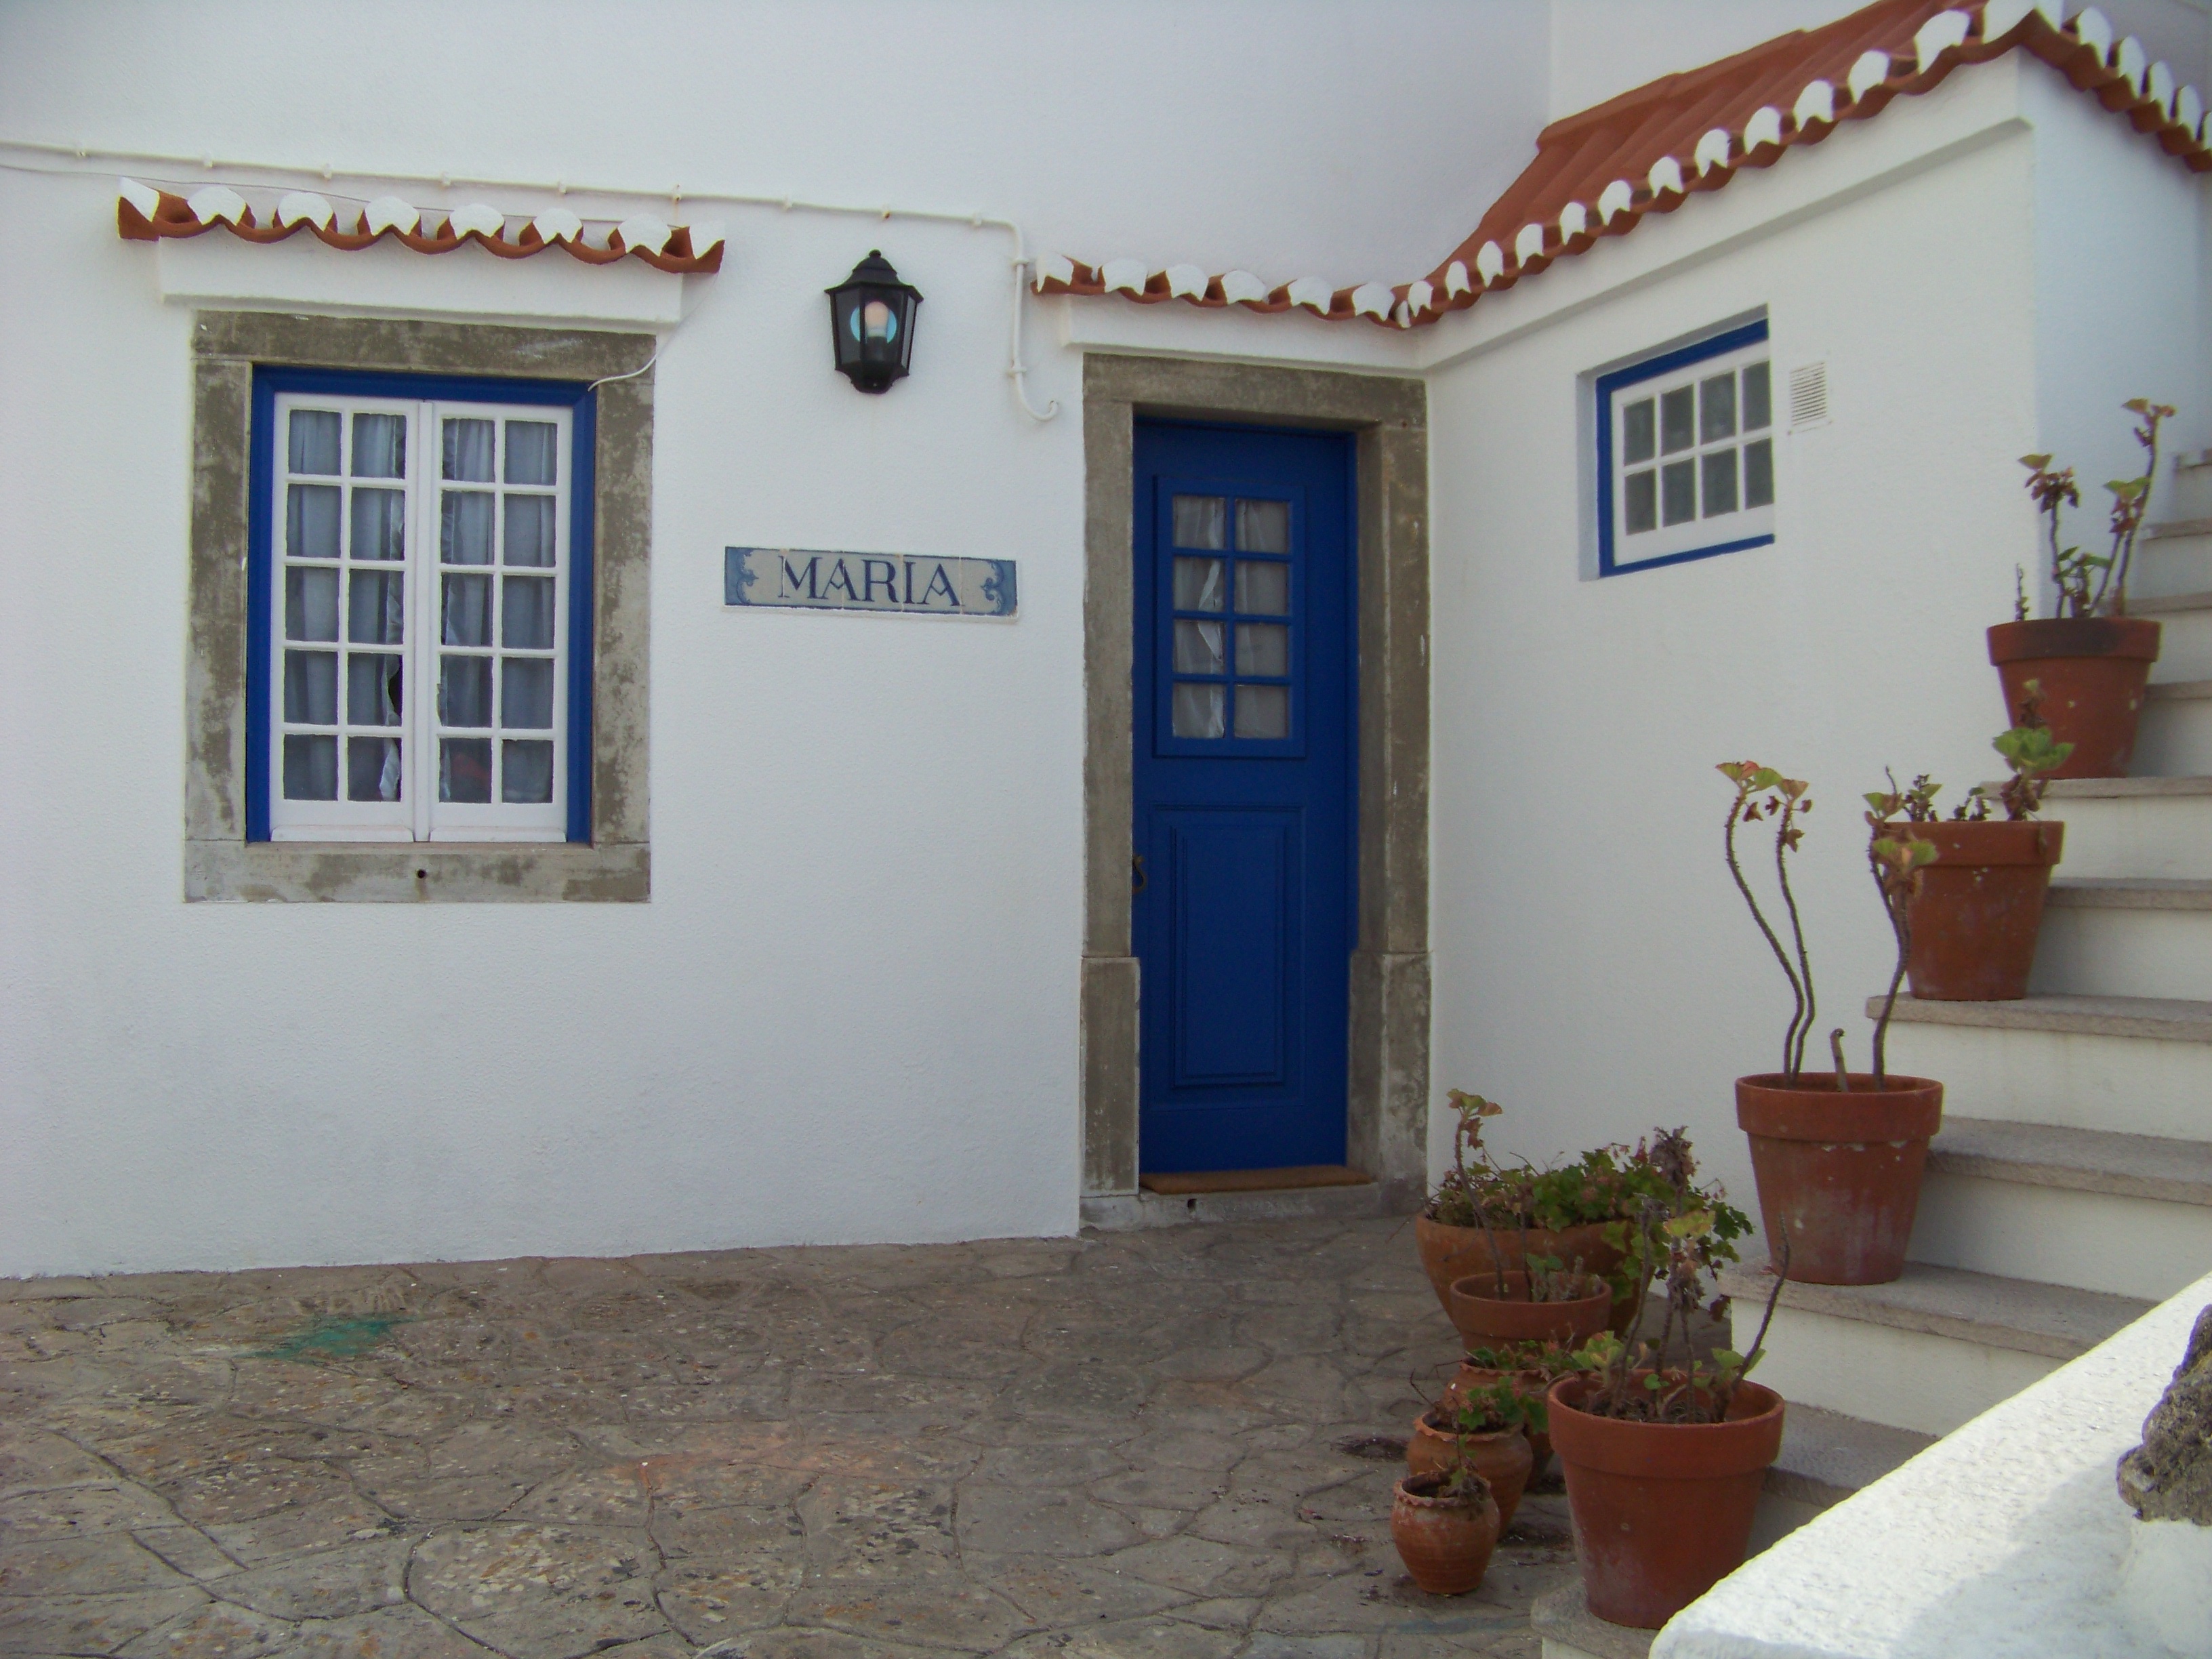 Vivenda Maria 0 - Azenhas do Mar - Casas de campo en alquiler en Colares,  Lisboa, Portugal